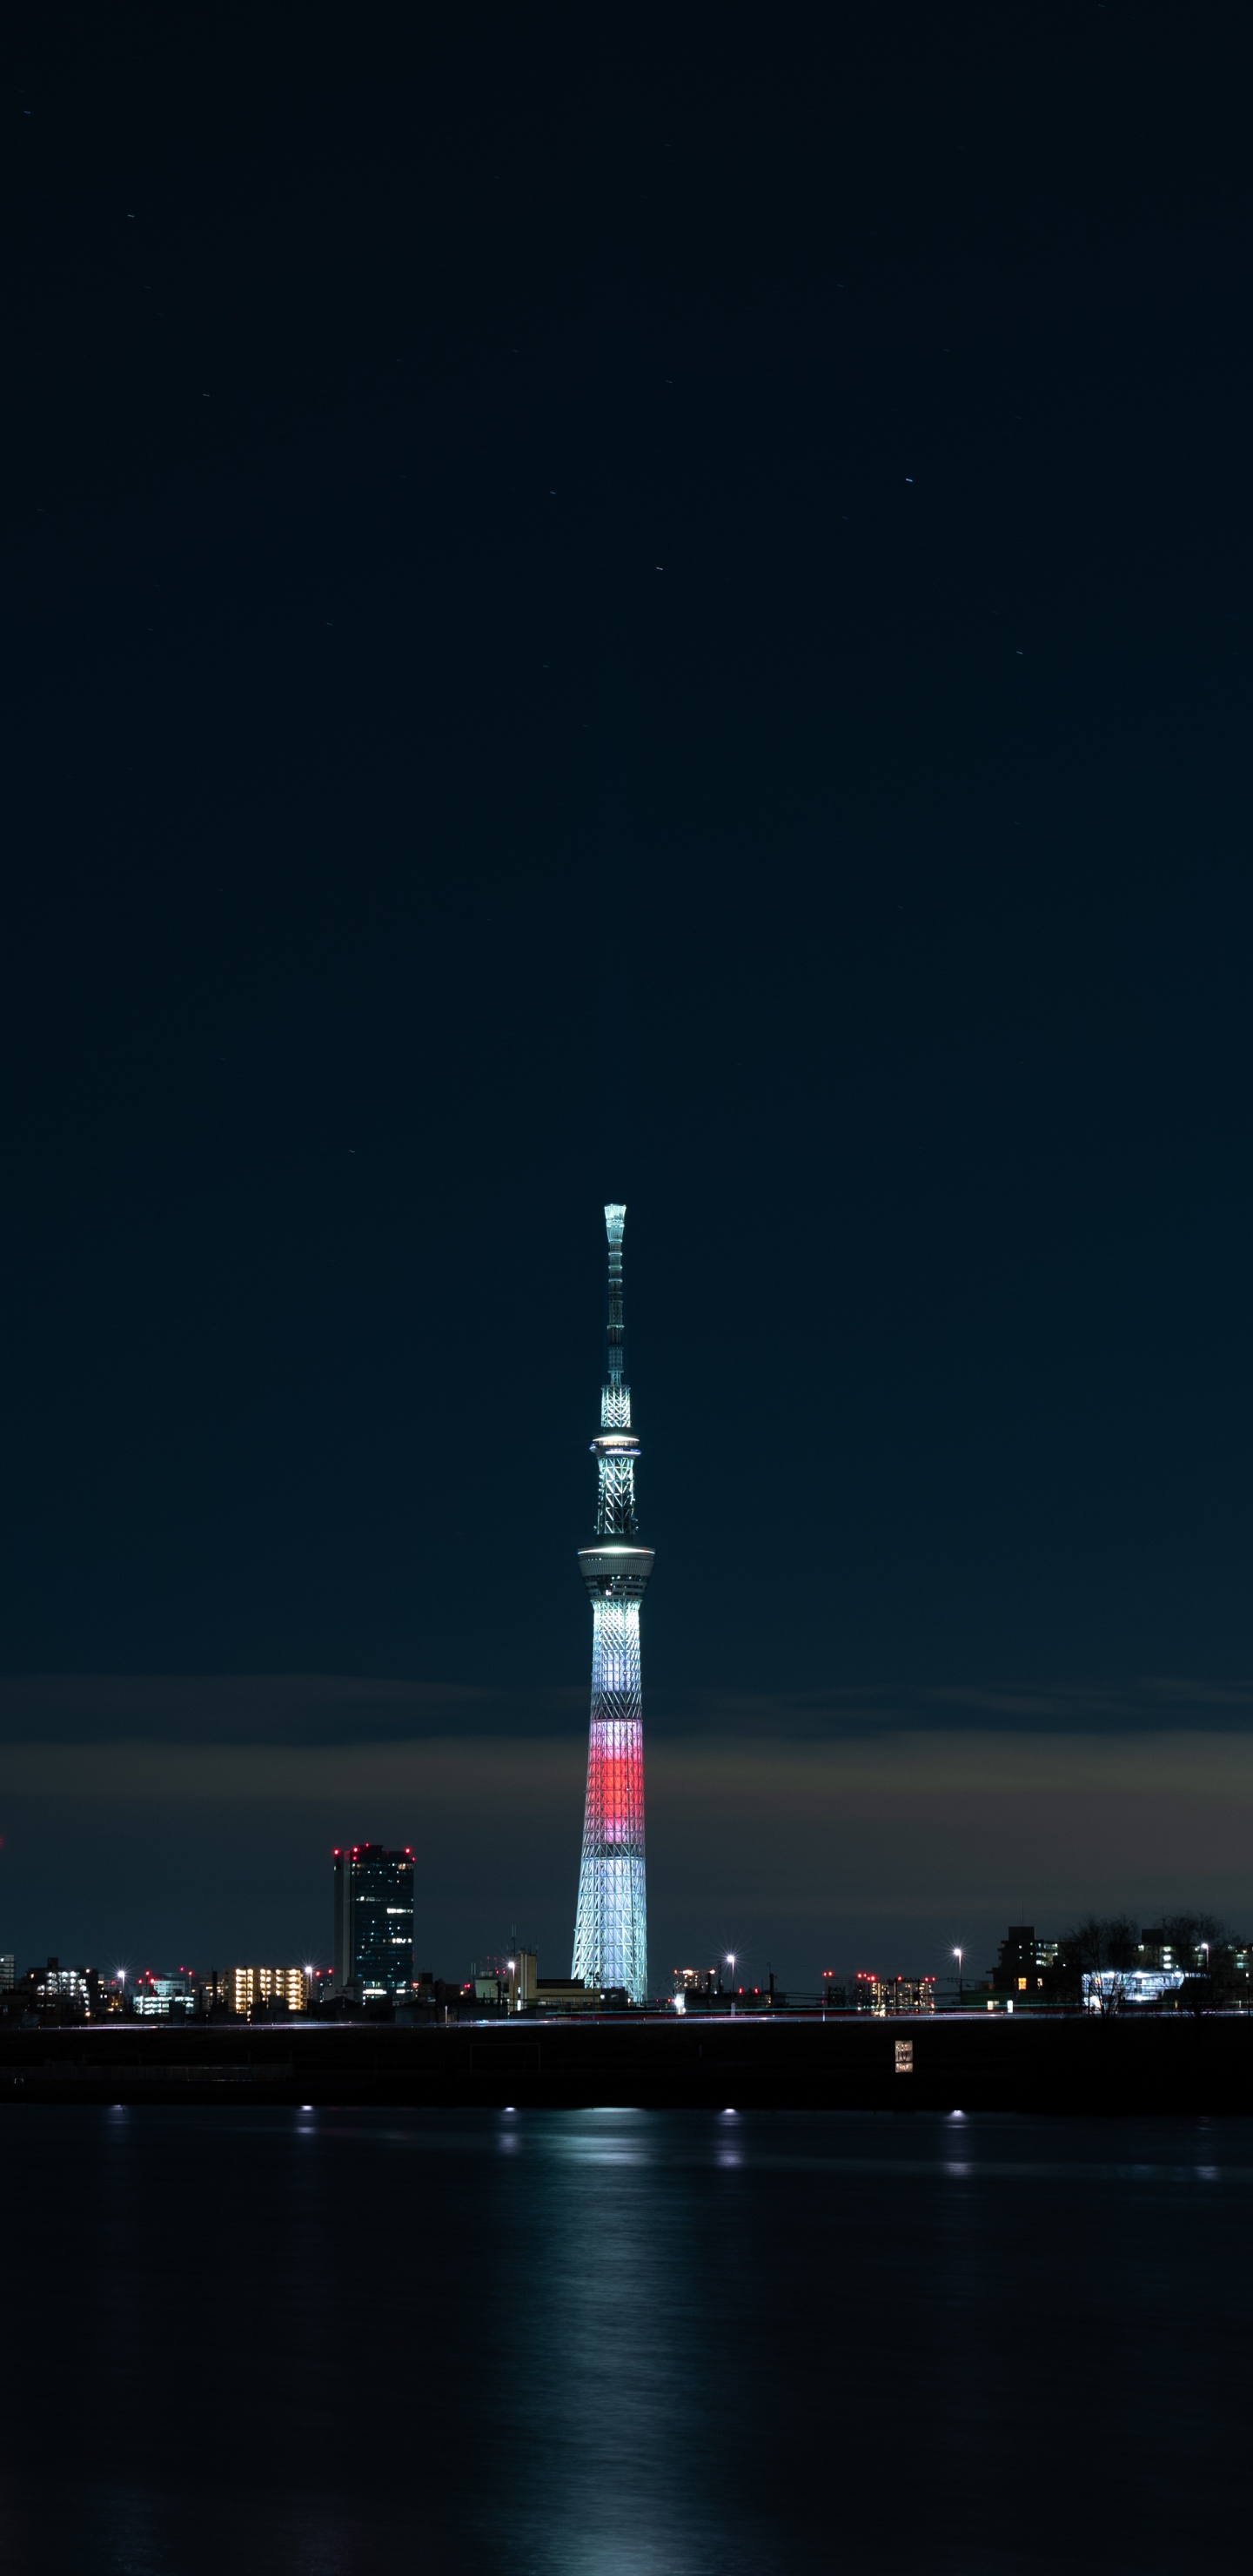 Weißer Und Roter Turm in Der Nähe Eines Gewässers Während Der Nacht. Wallpaper in 1440x2960 Resolution